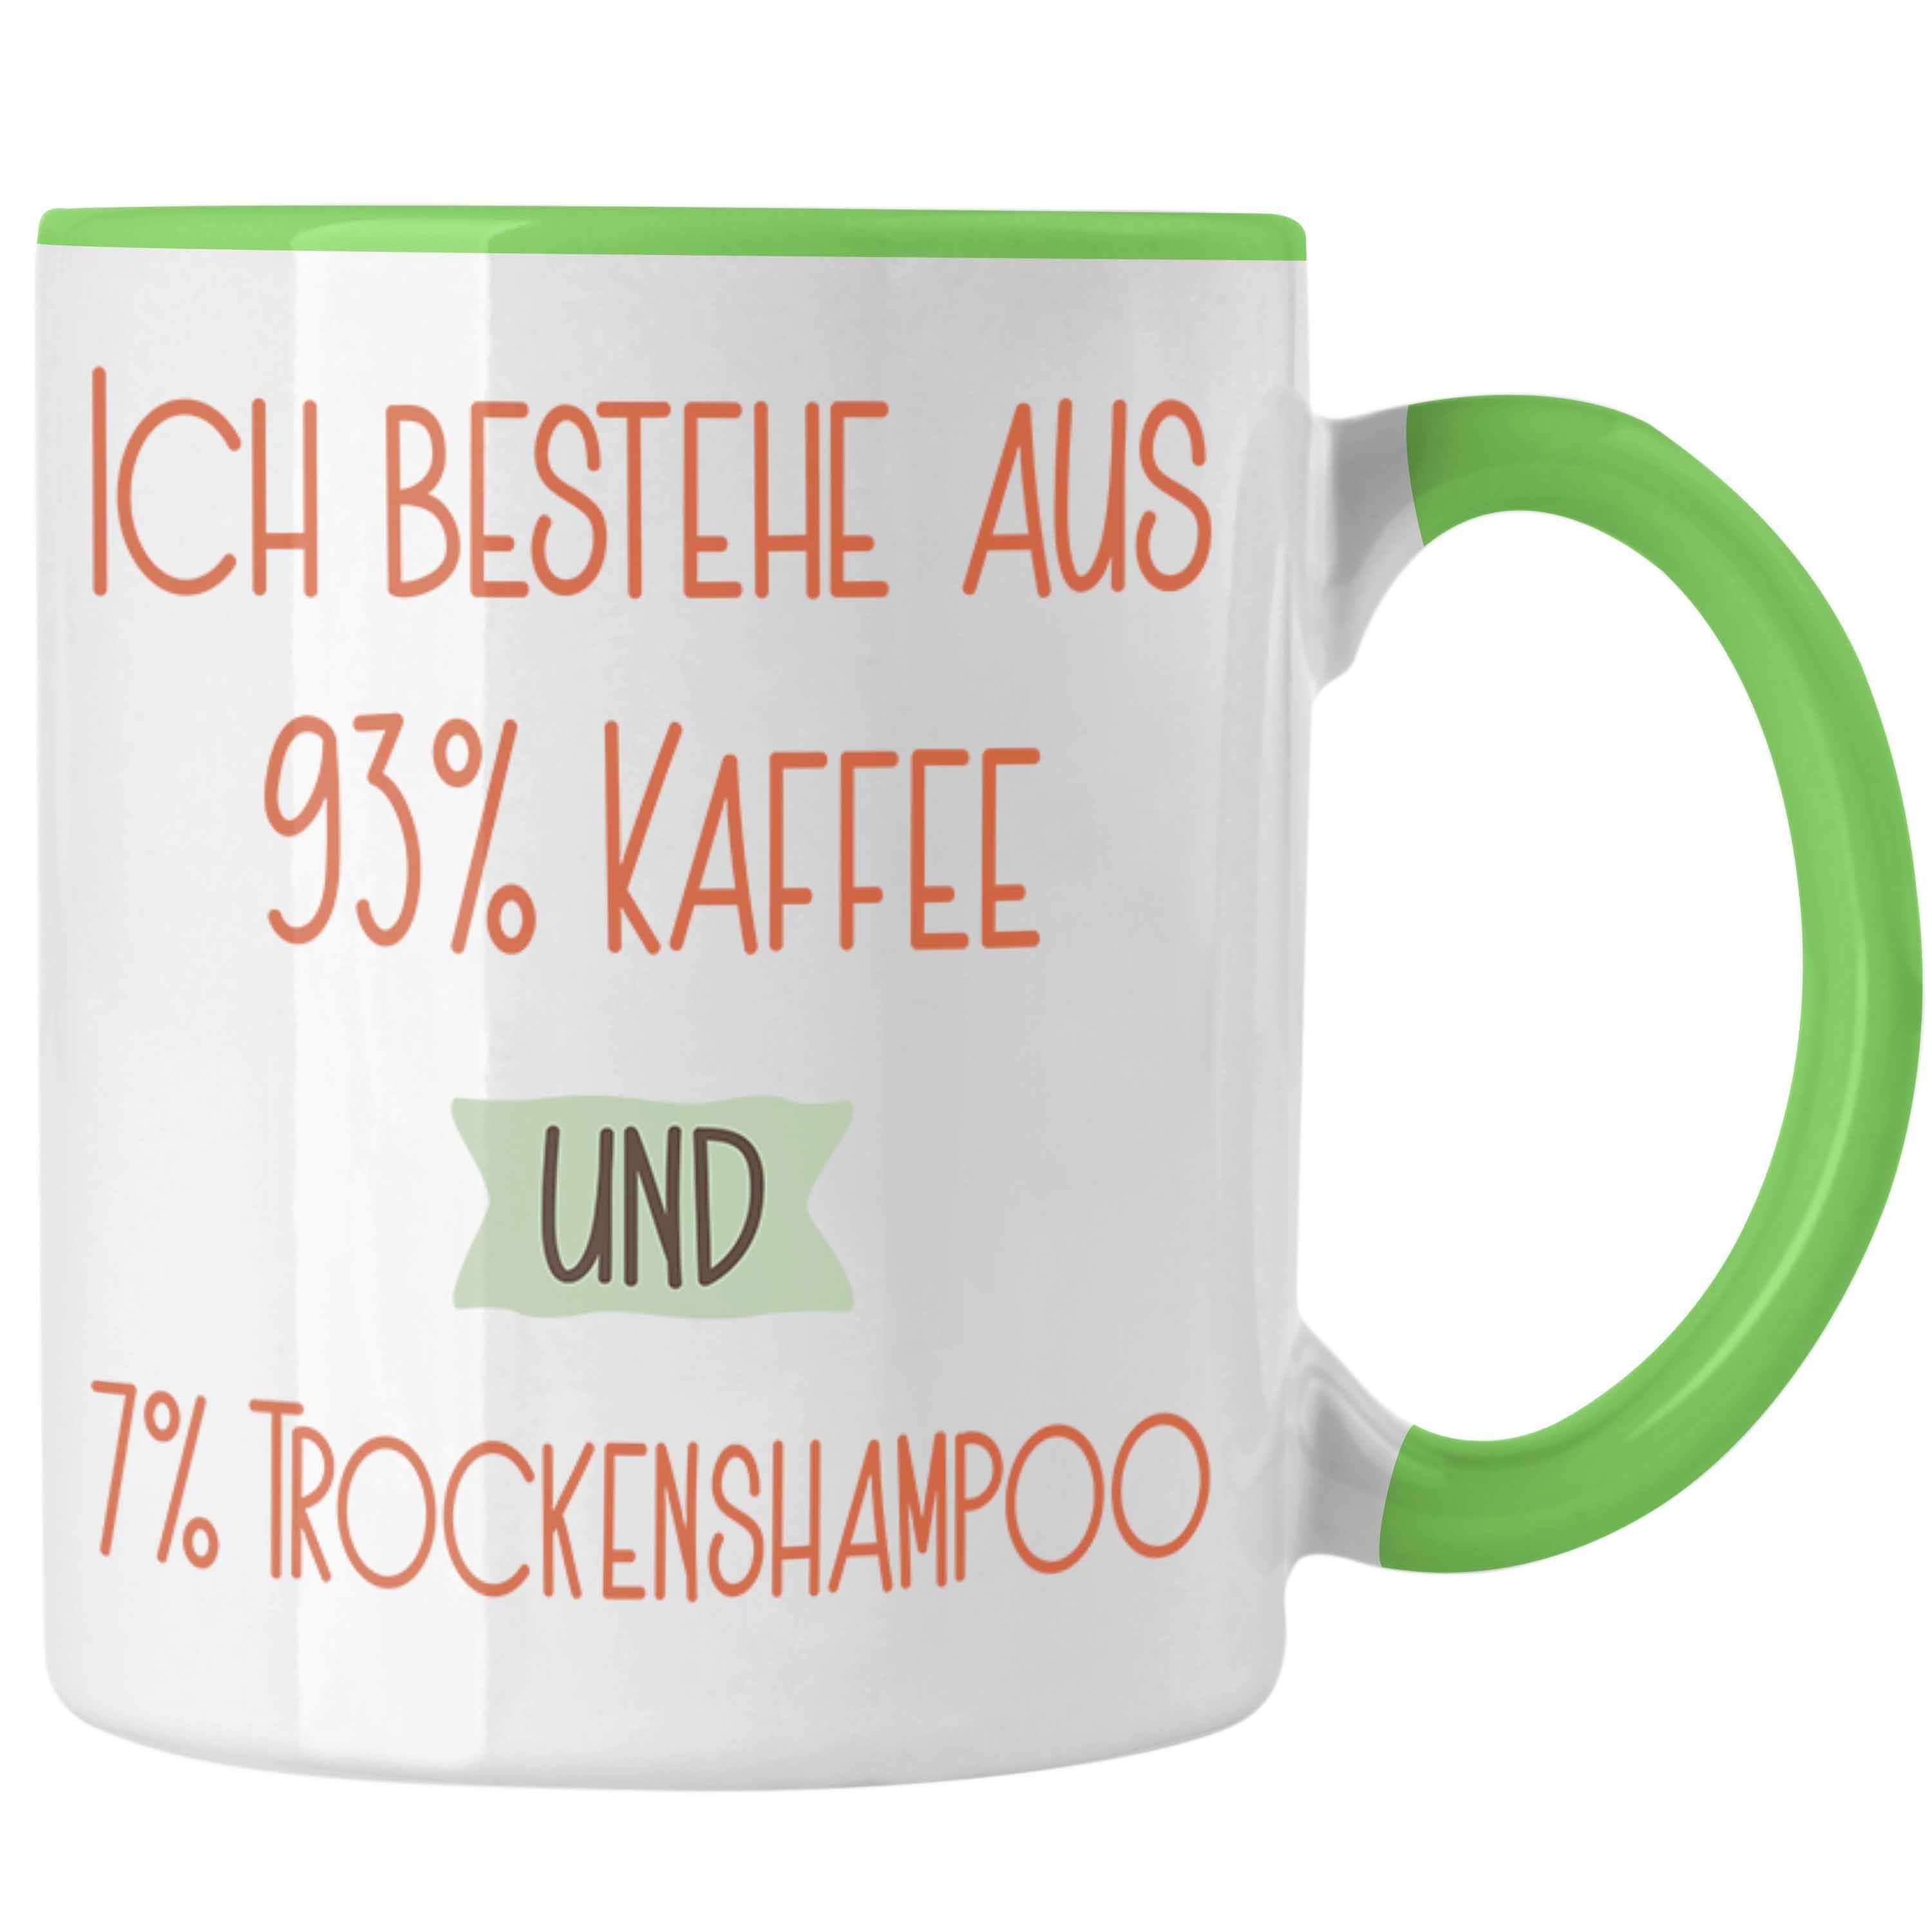 Trendation Tasse 93% Kaffee und 7% Trockenshampoo Tasse Geschenk Lustiger Spruch Für Ko Grün